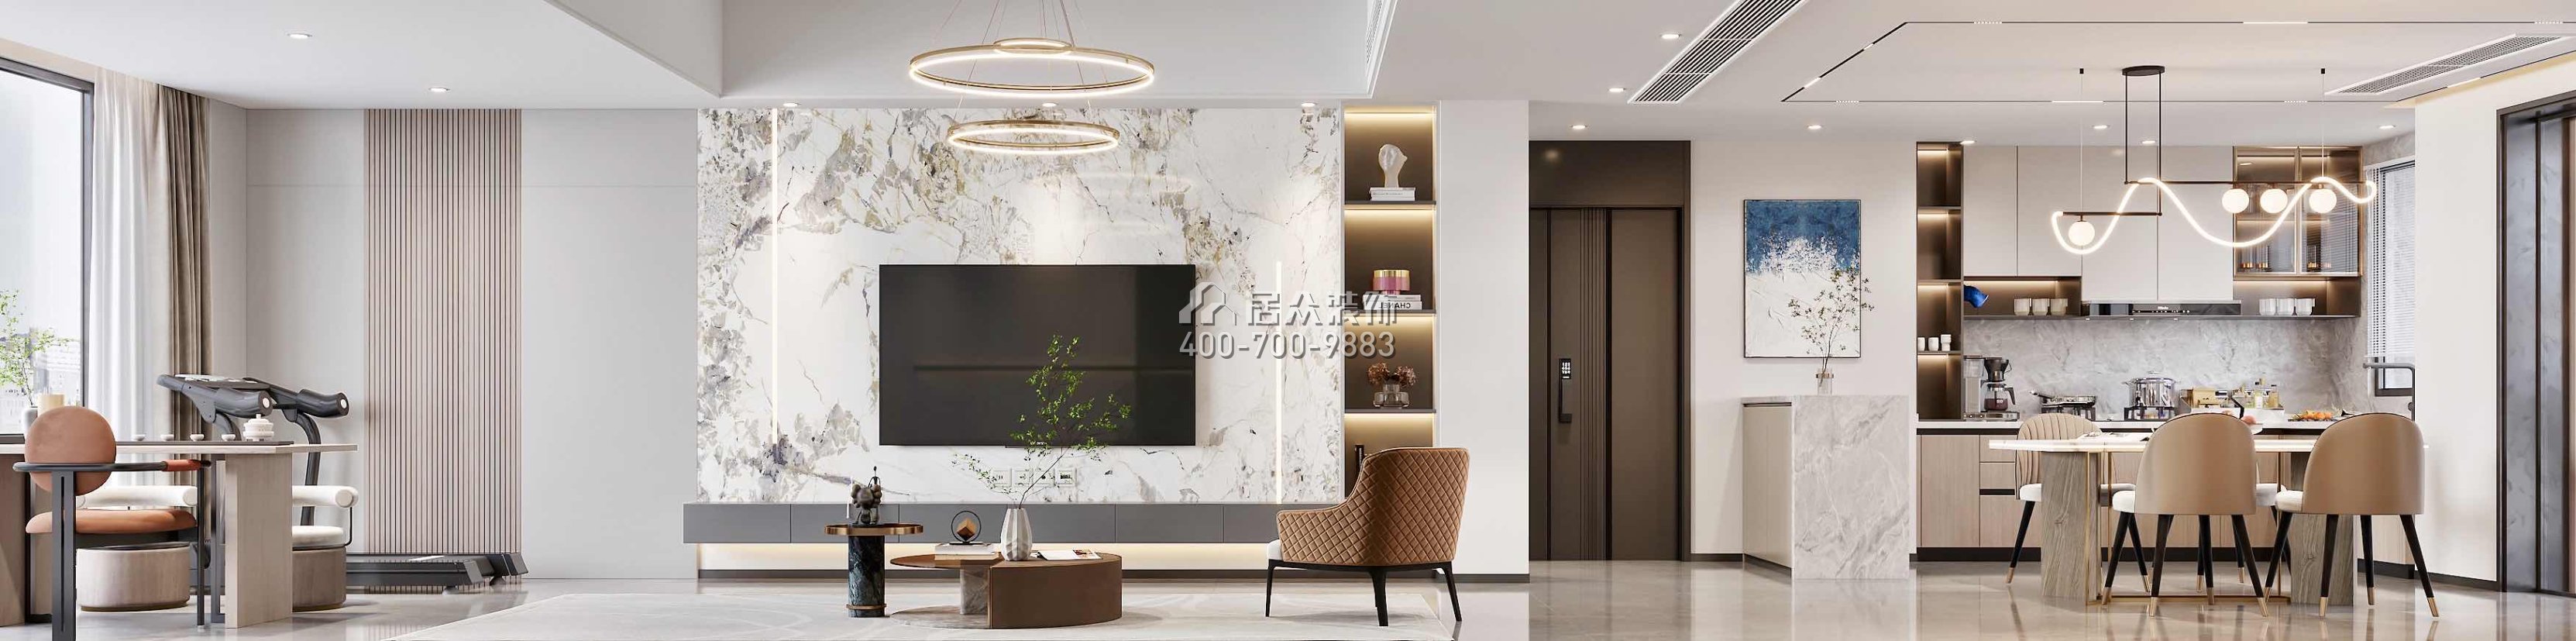 翠湖香山150平方米現代簡約風格平層戶型客廳裝修效果圖